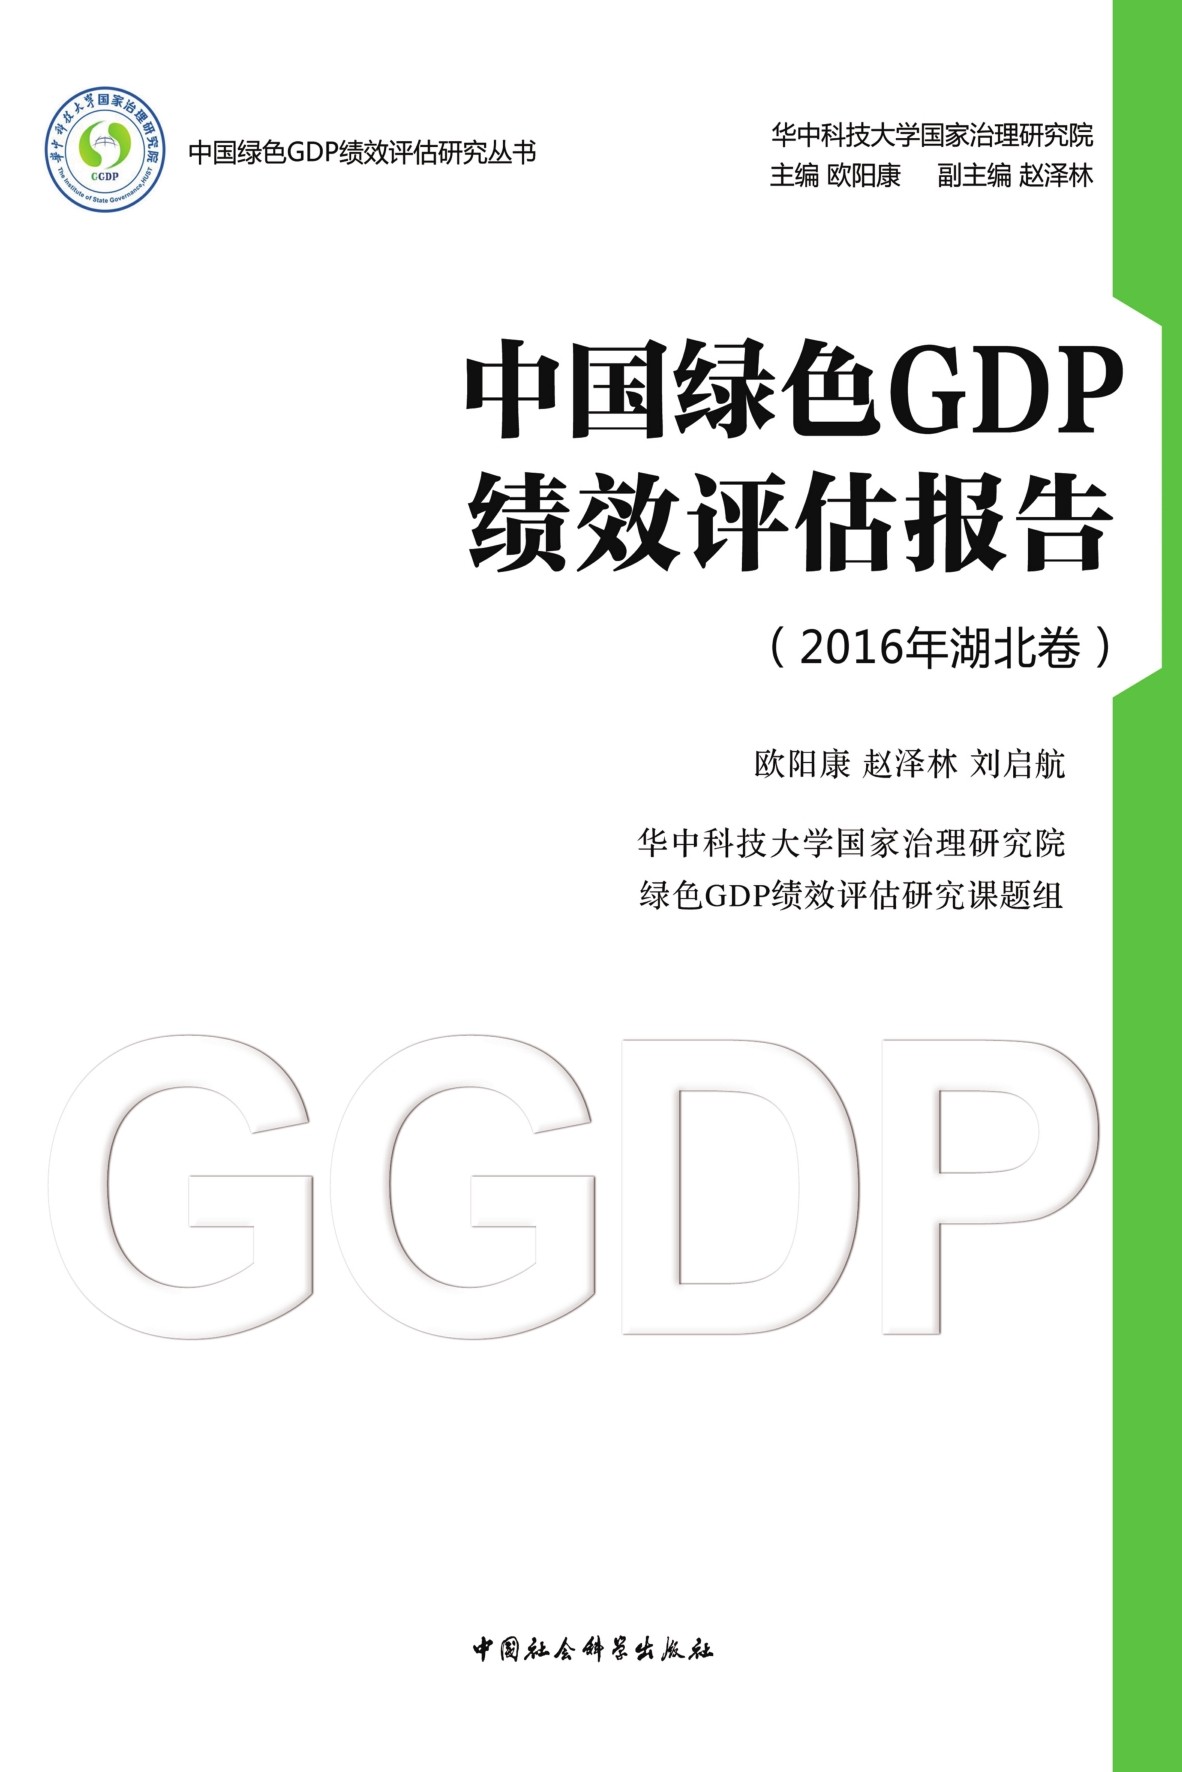 江苏绿色gdp政策_热点解读 解读首份绿色GDP报告